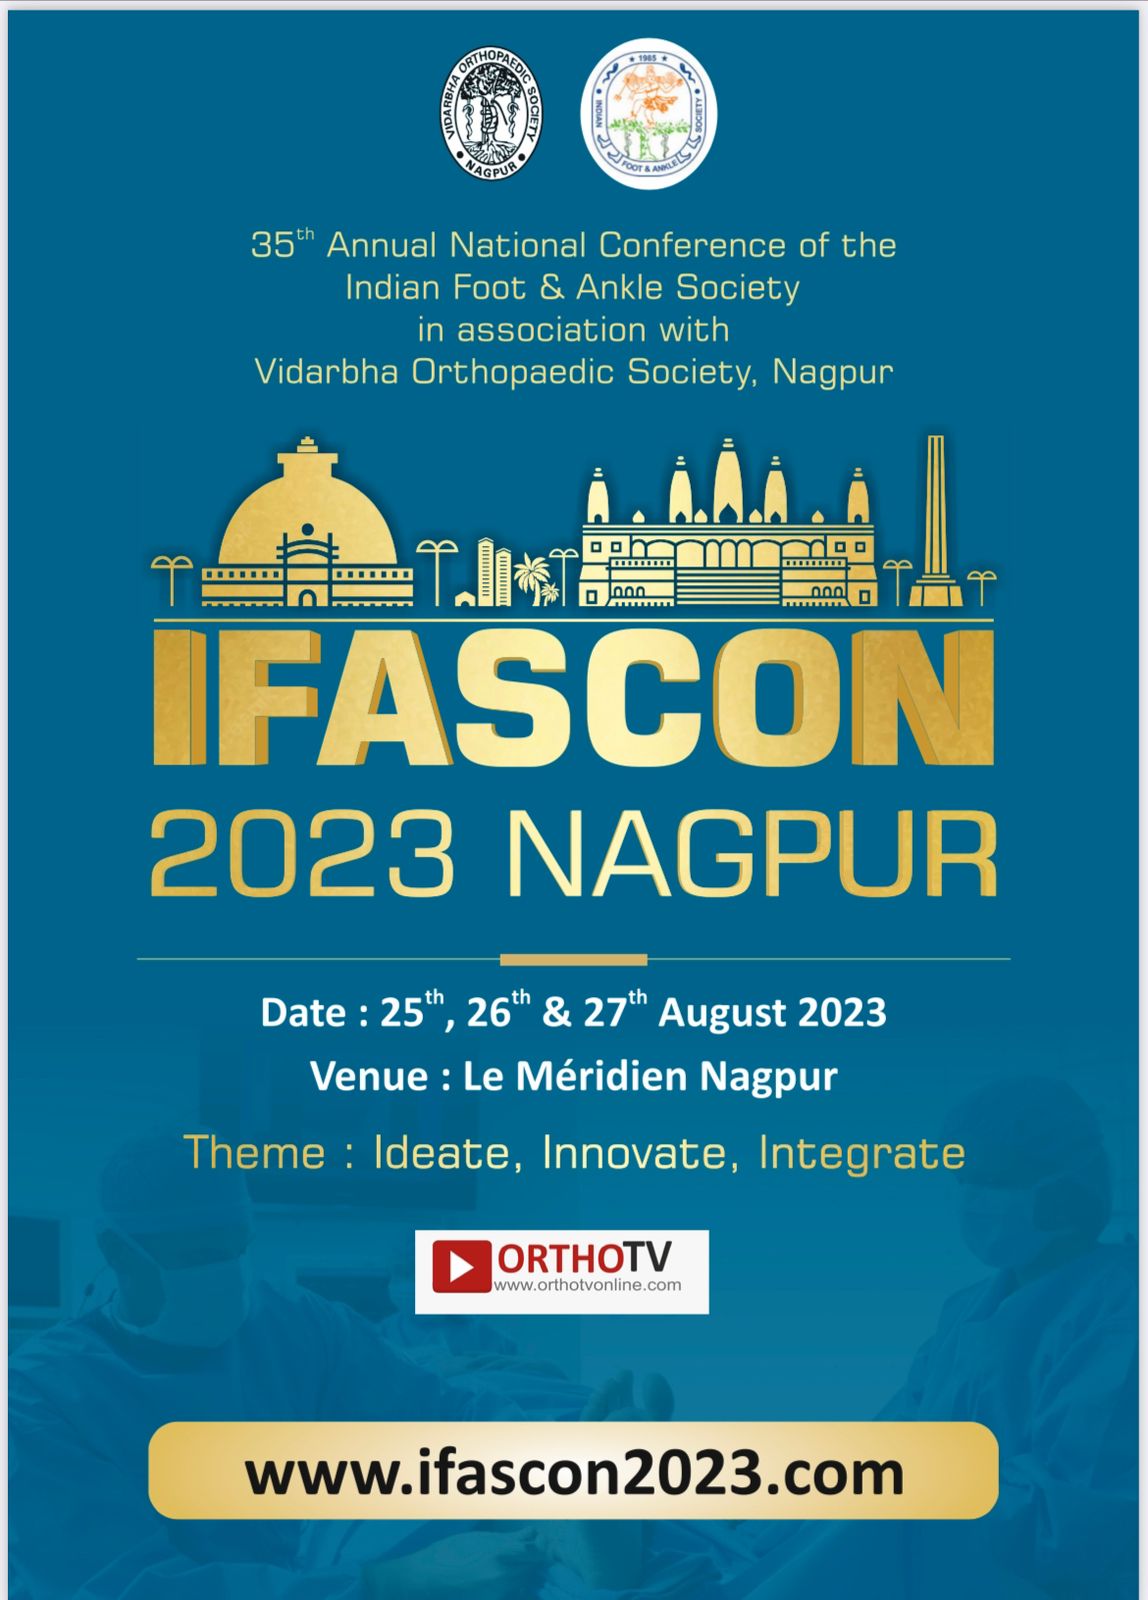 IFASCON 2023 NAGPUR